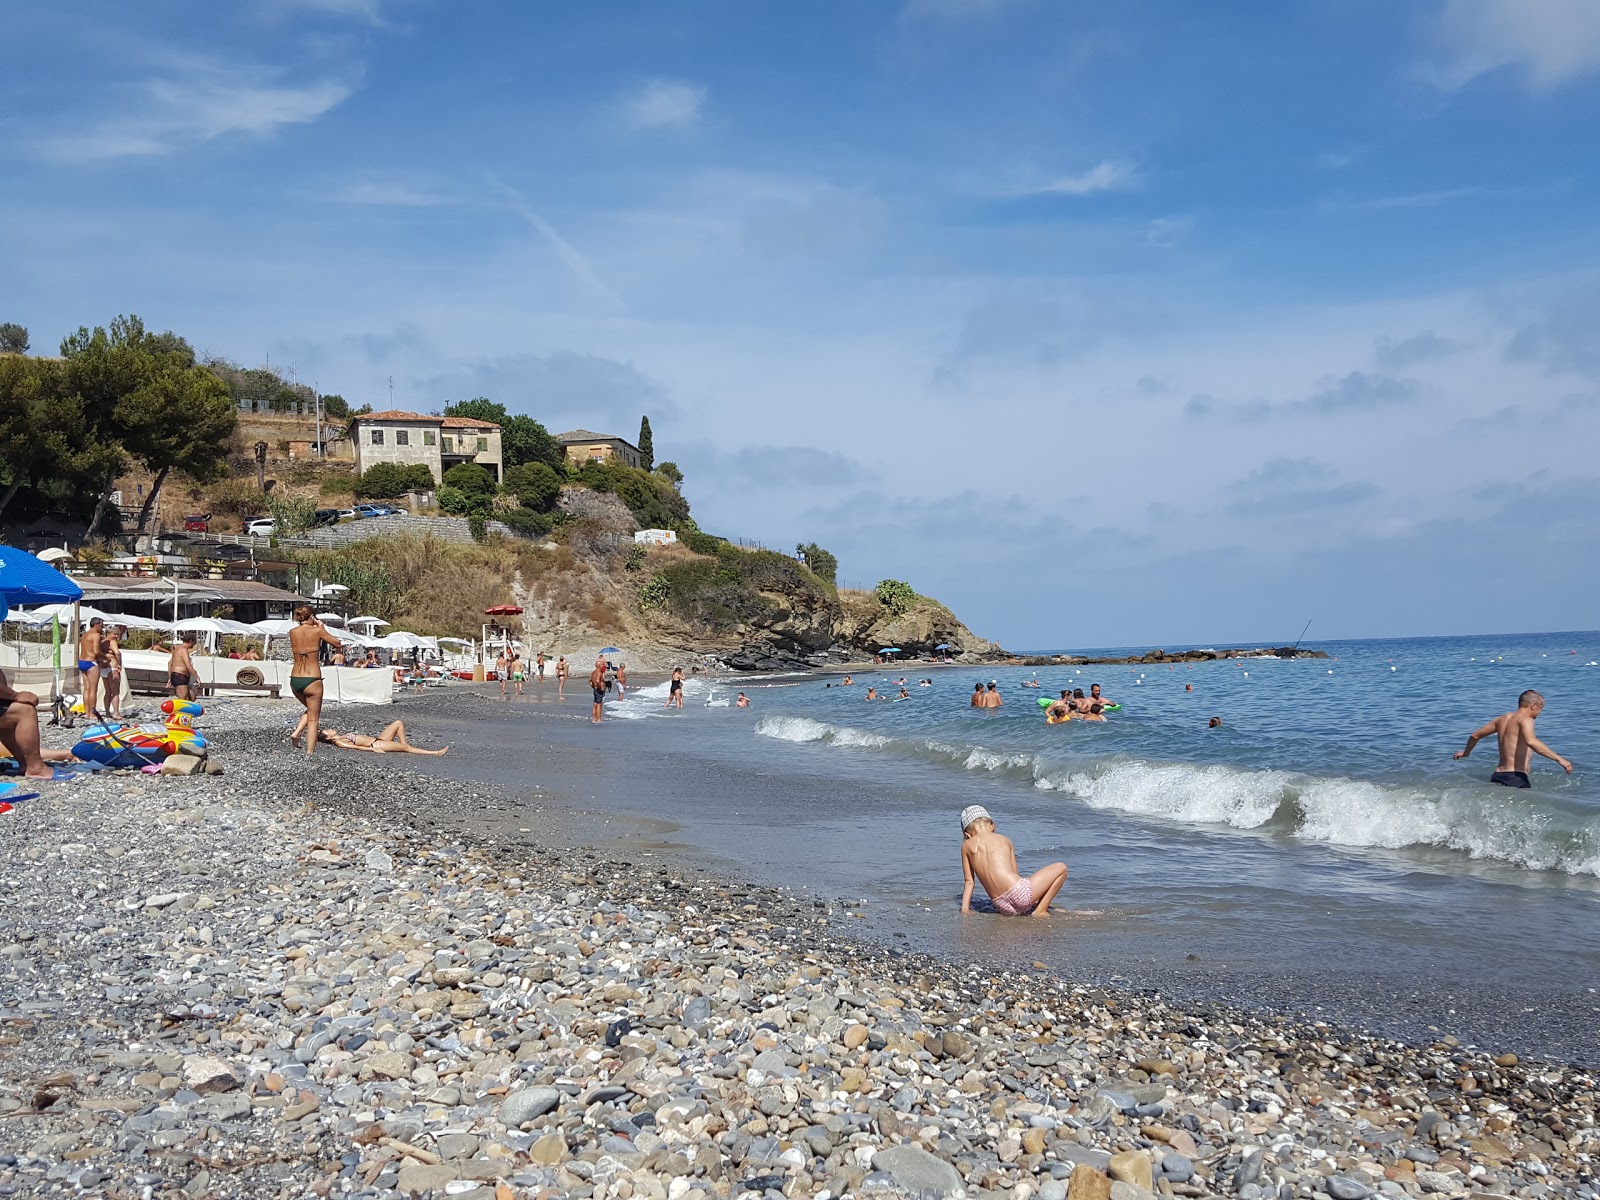 Spiaggia libera Alassio的照片 海滩度假区